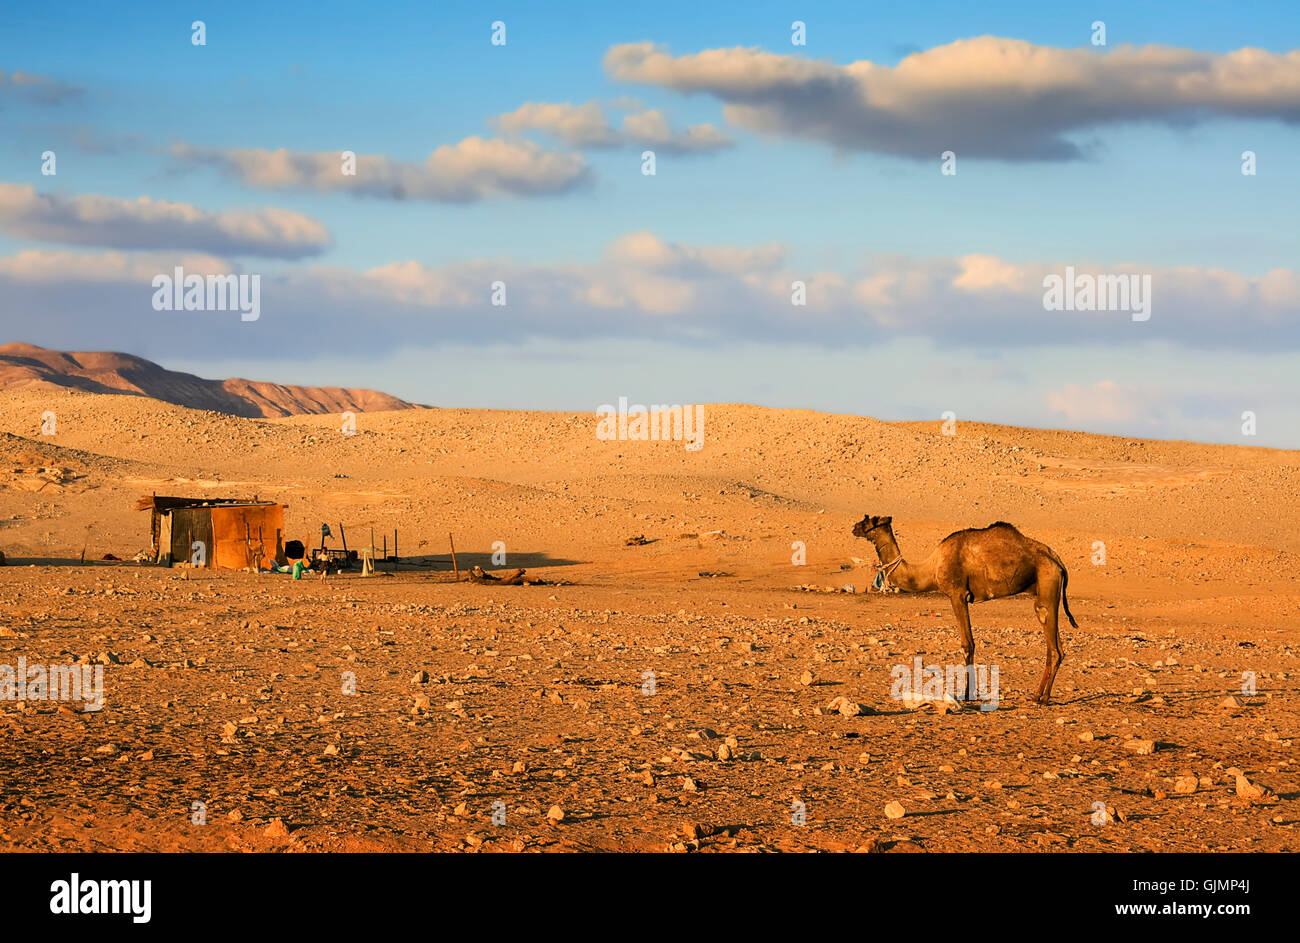 desert wasteland camel Stock Photo